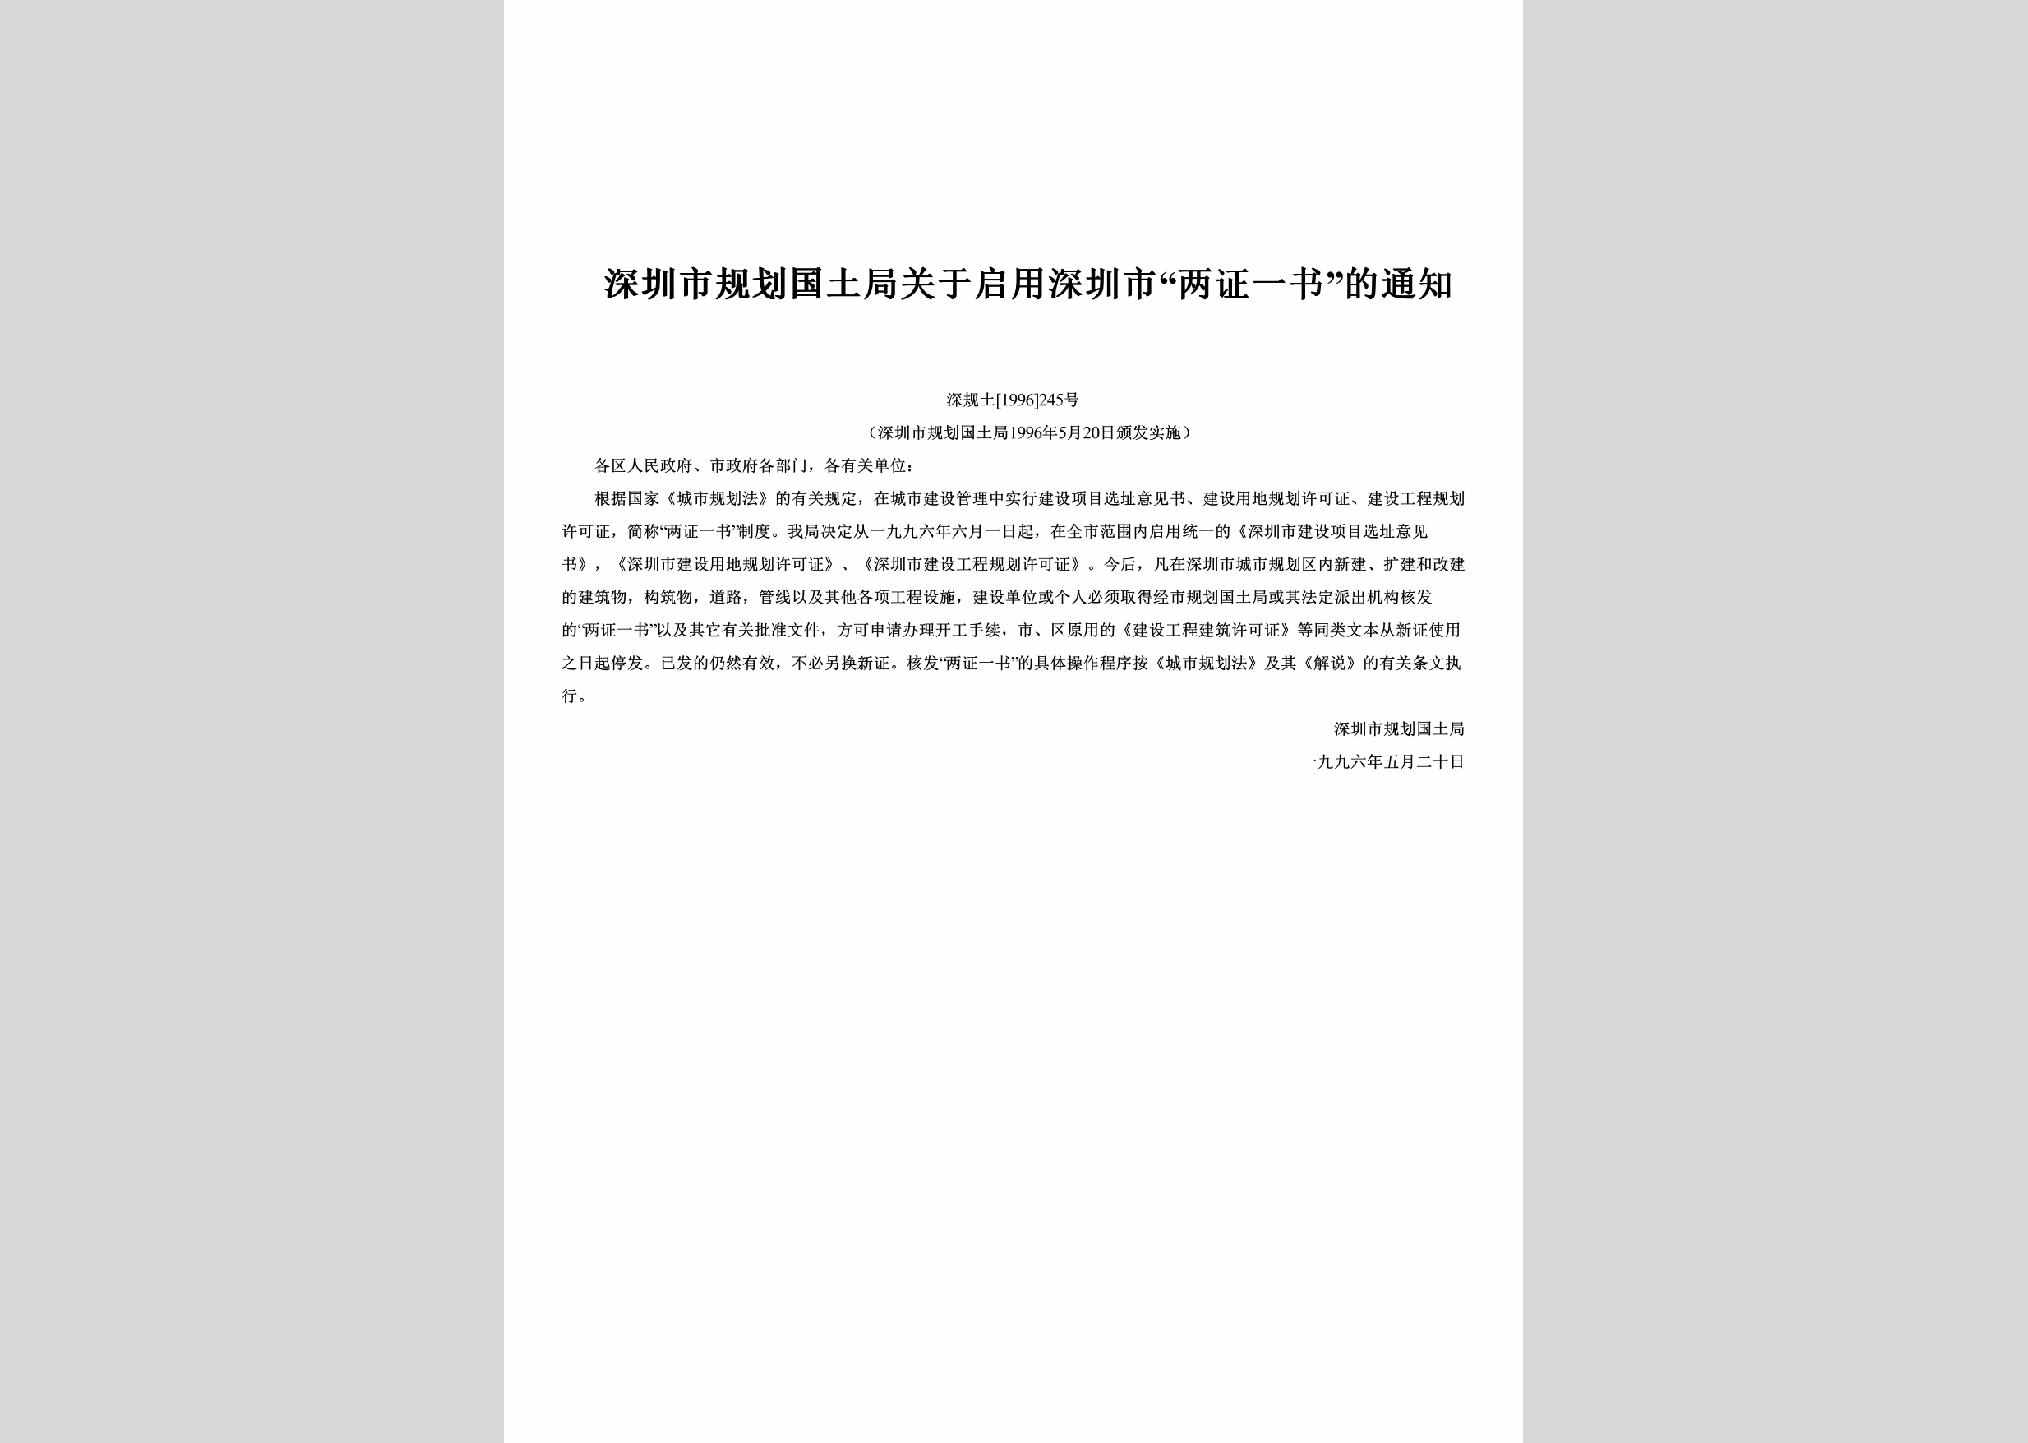 深规土[1996]245号：关于启用深圳市“两证一书”的通知